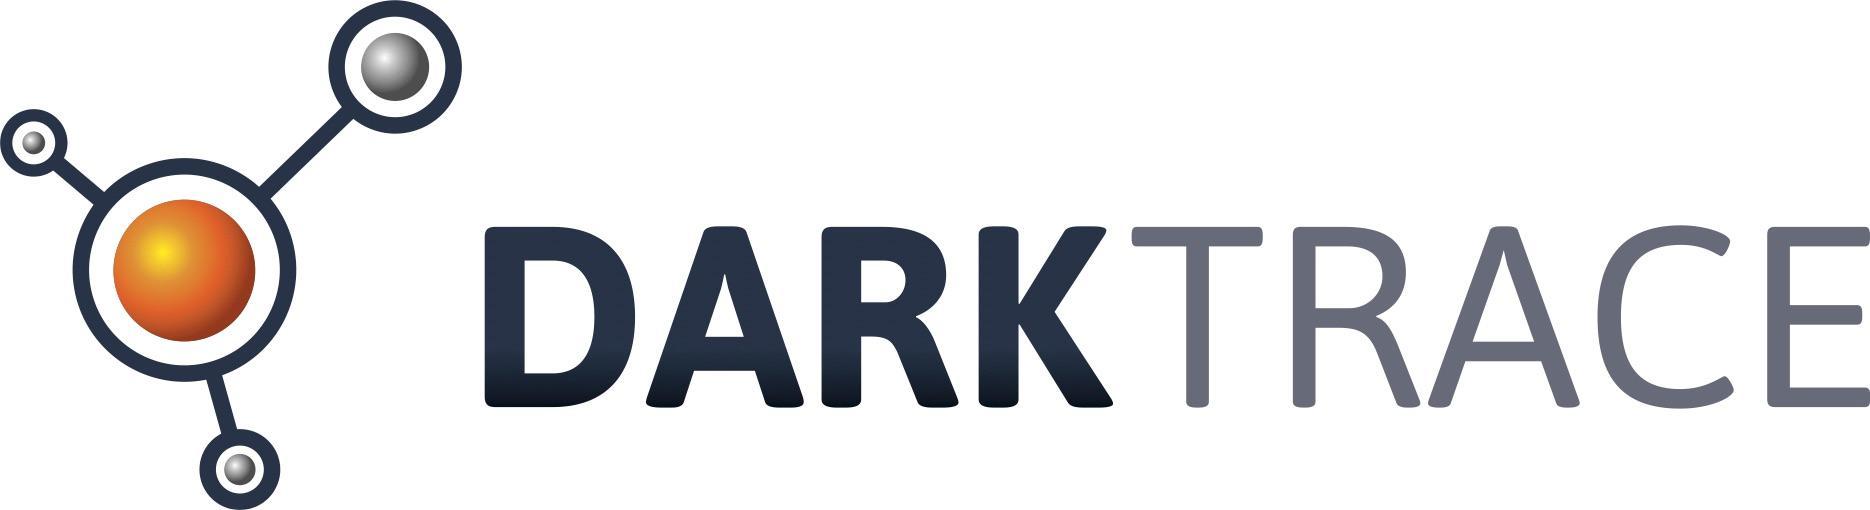 Darktrace logo